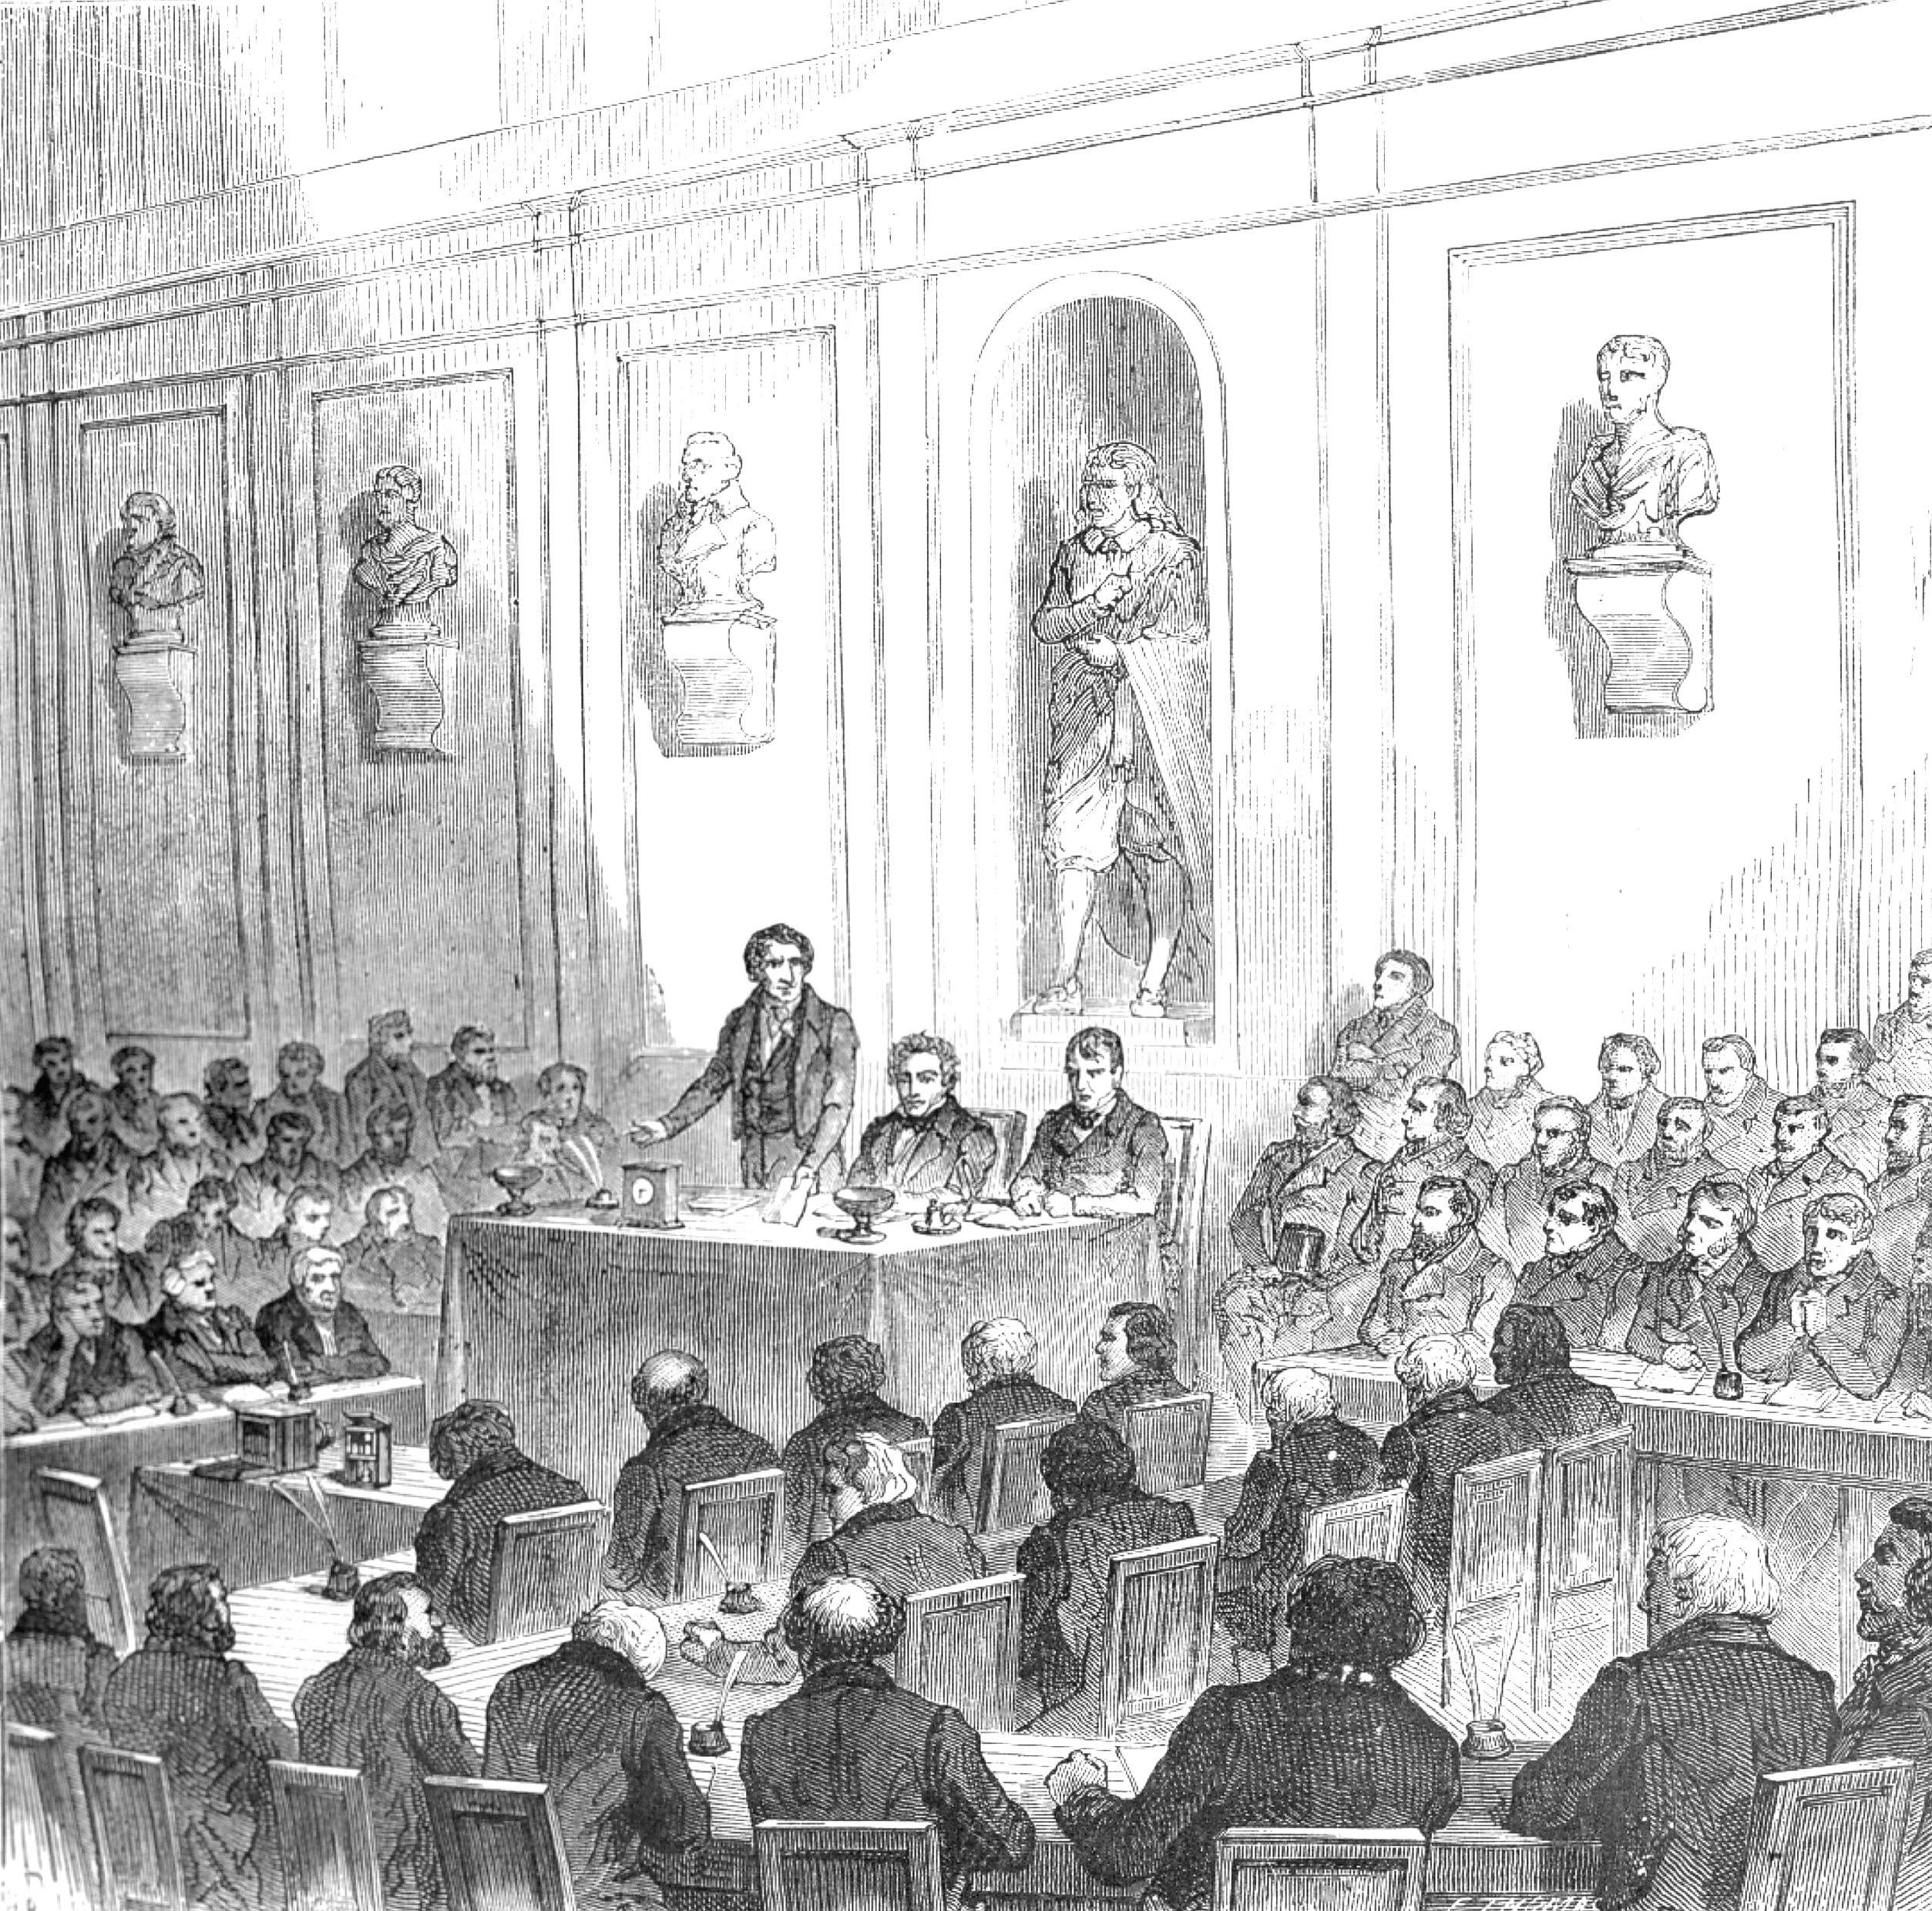 Arago presents the details of the Daguerre's photographic process during the public session of the Academy of Sciences,19 août 1839 - droits : Bibliothèque de l'Observatoire de Paris.